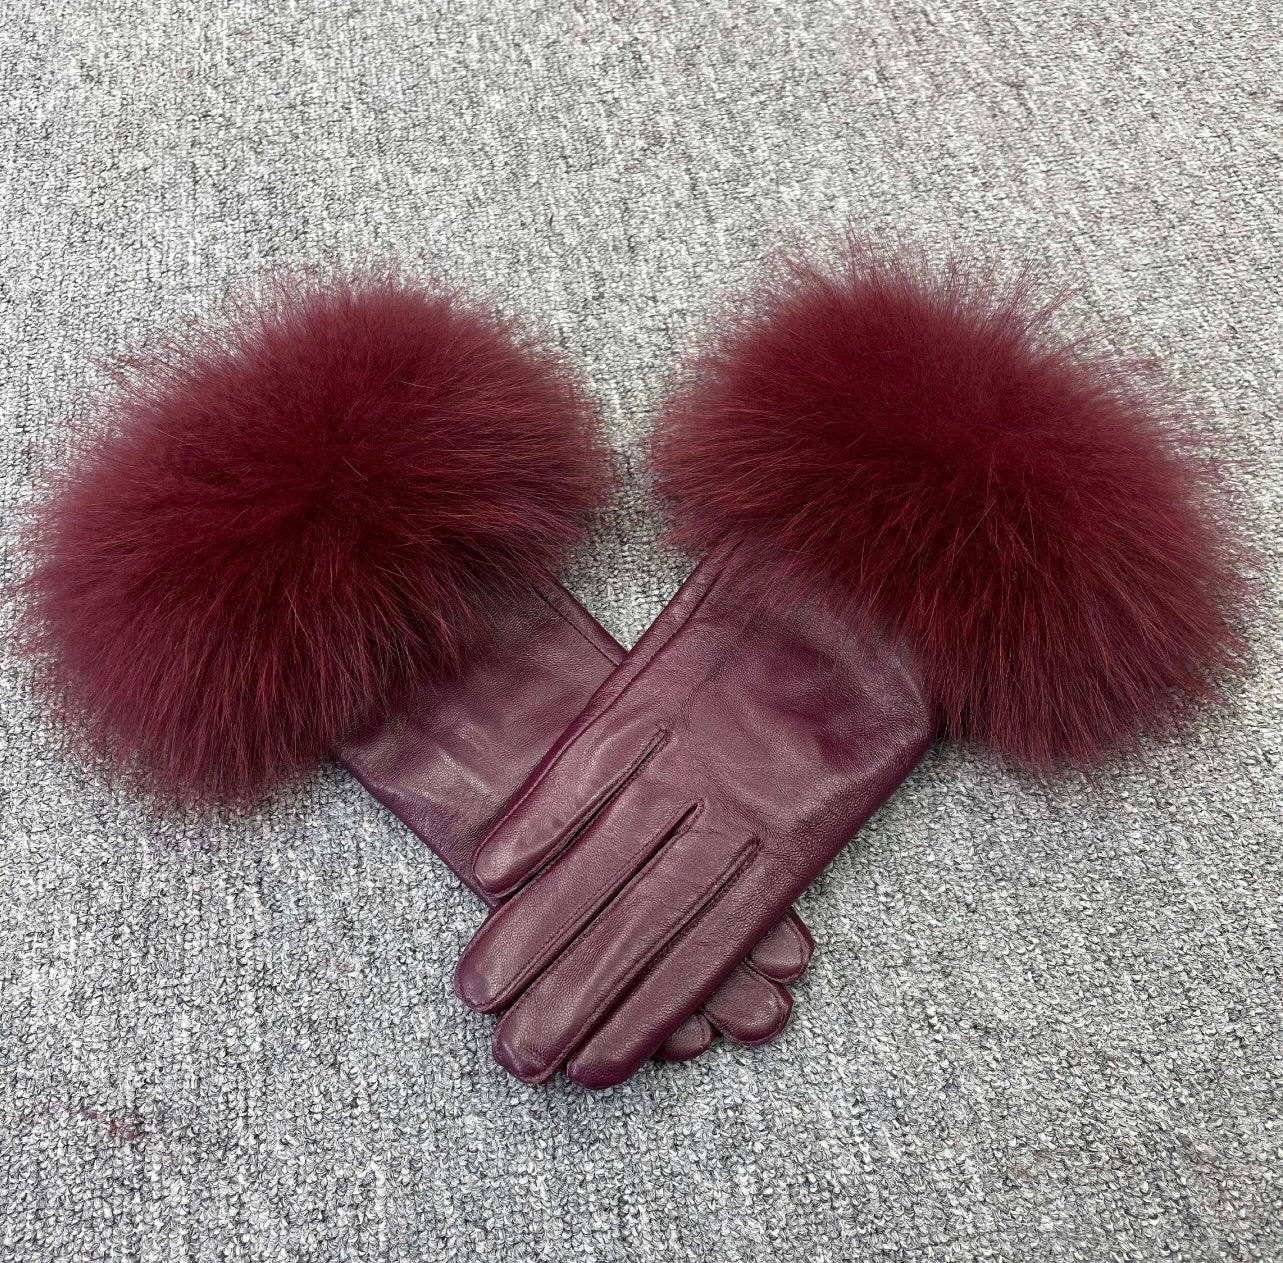 Kaamra’s Luxury leather gloves, Maroon